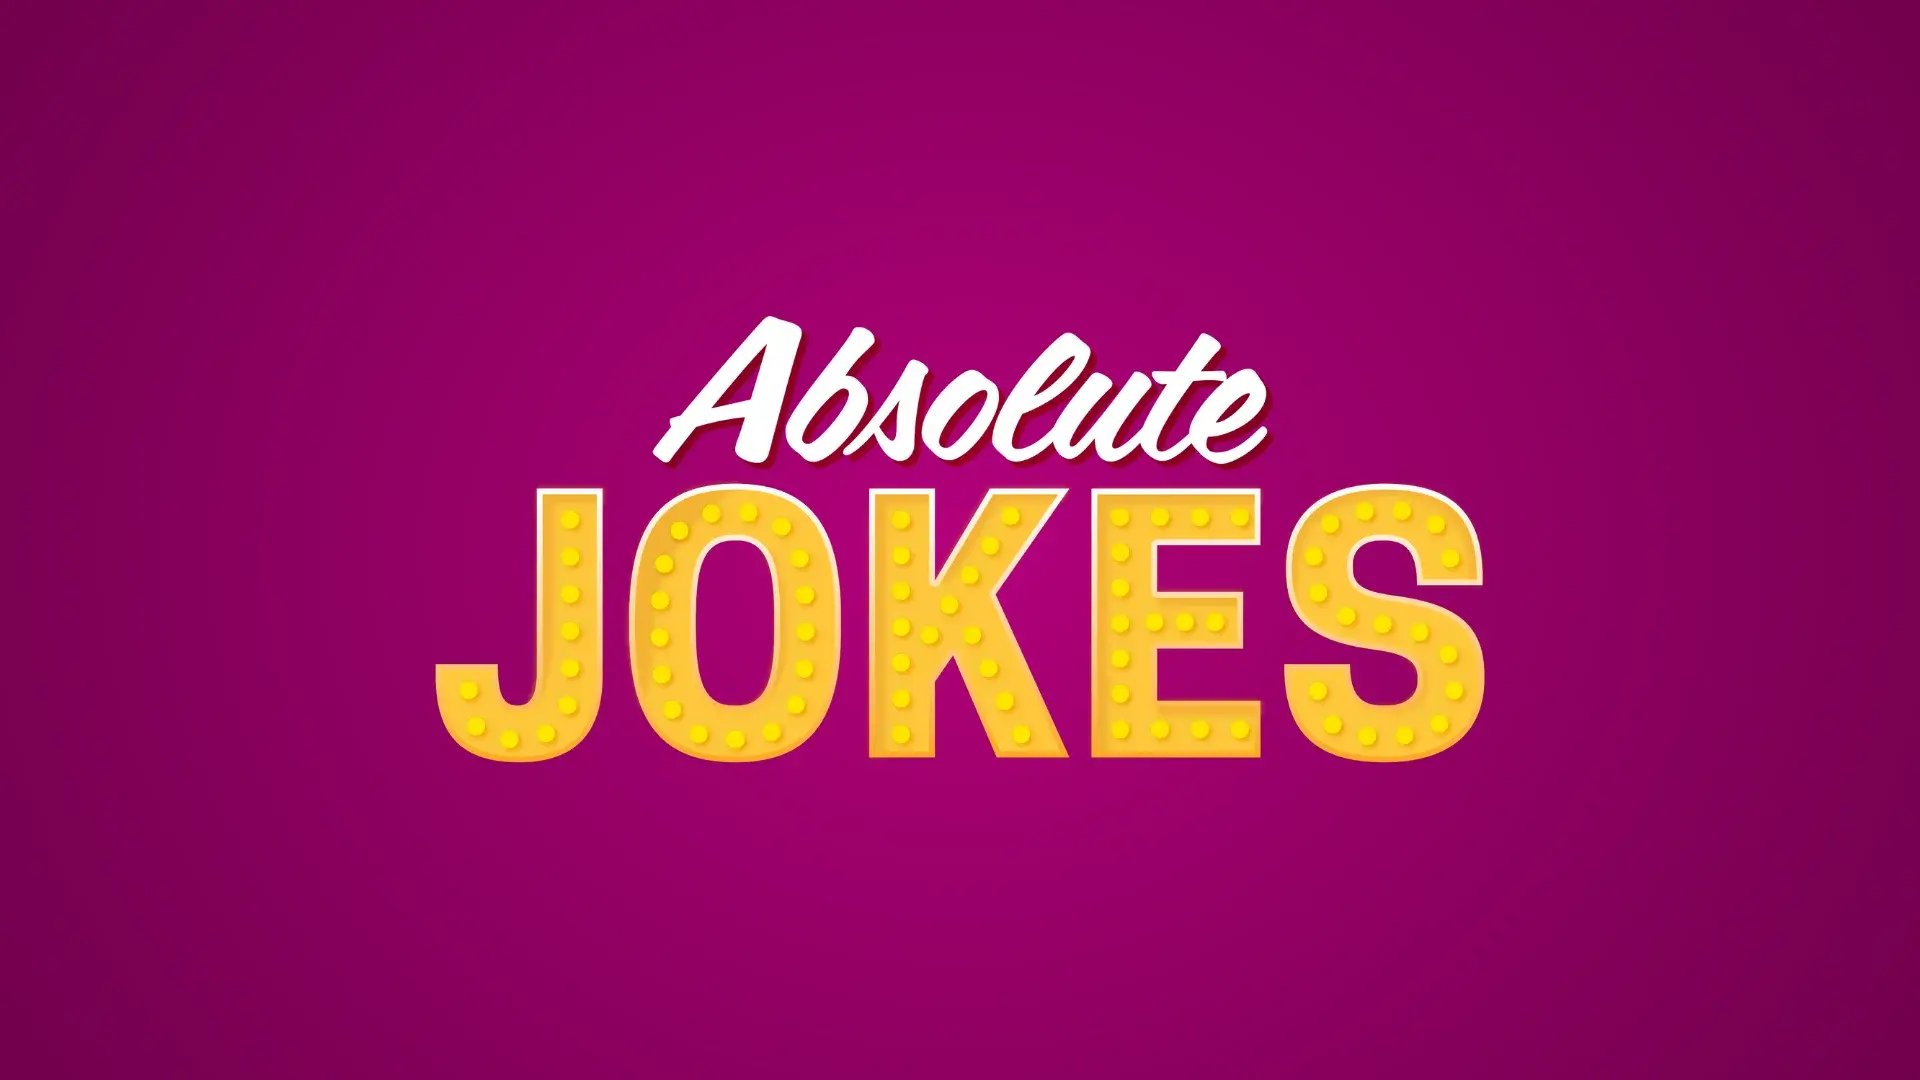 absolute jokes-2